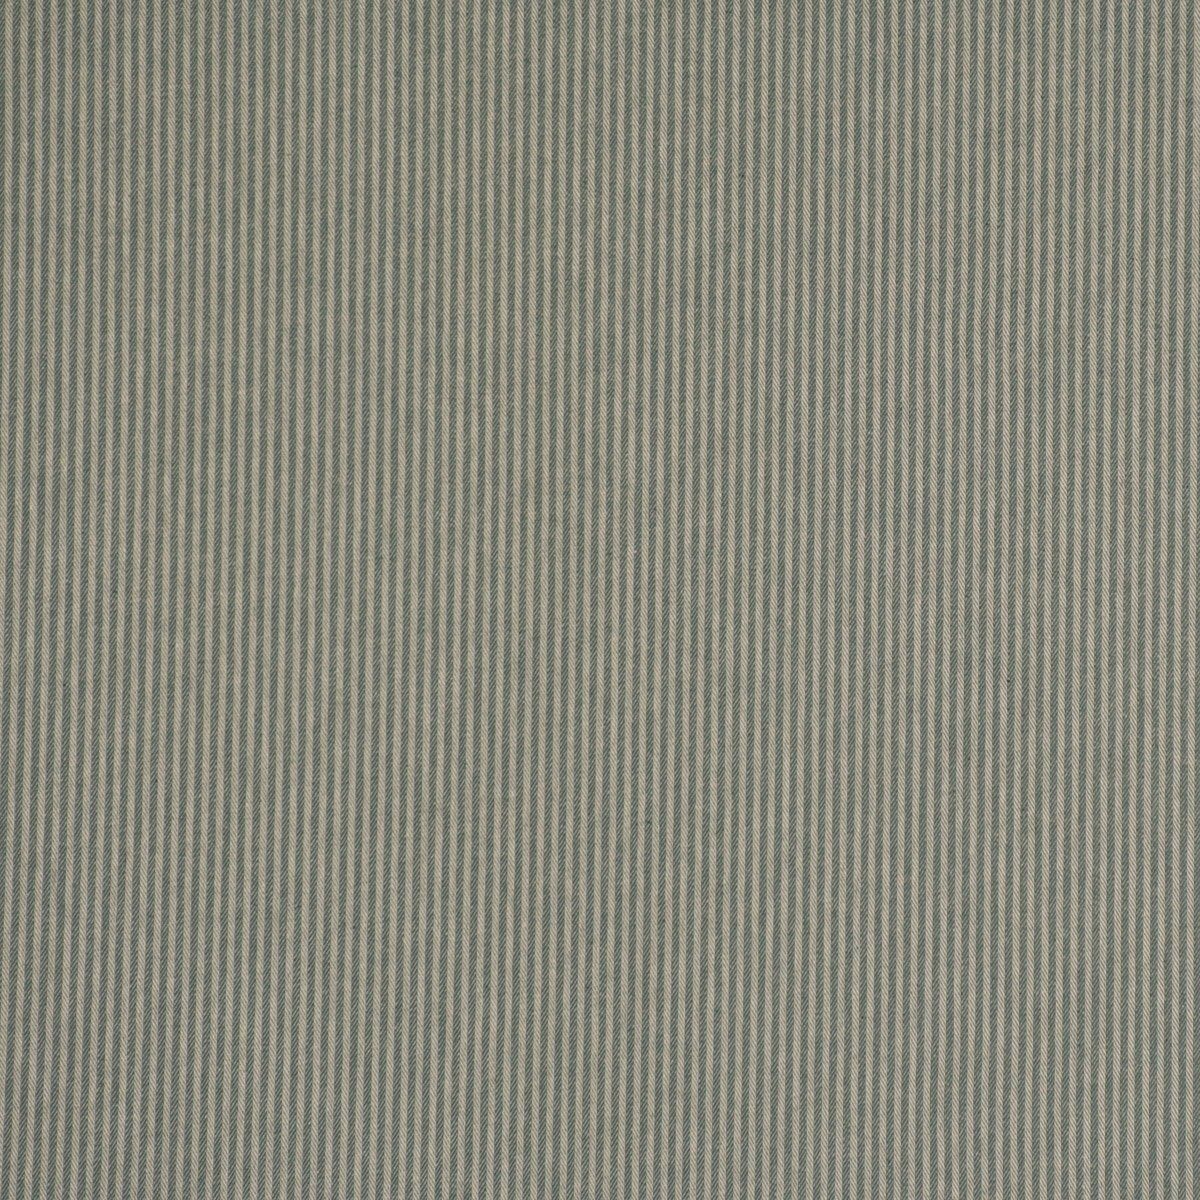 SCHÖNER LEBEN., Smokband handmade, beige Vorhang St), Germany, 245cm, blickdicht, vorgewaschen mintgrün LEBEN. Baumwolle, 3mm in beige,mintgrün Vorhang (1 made Streifen SCHÖNER